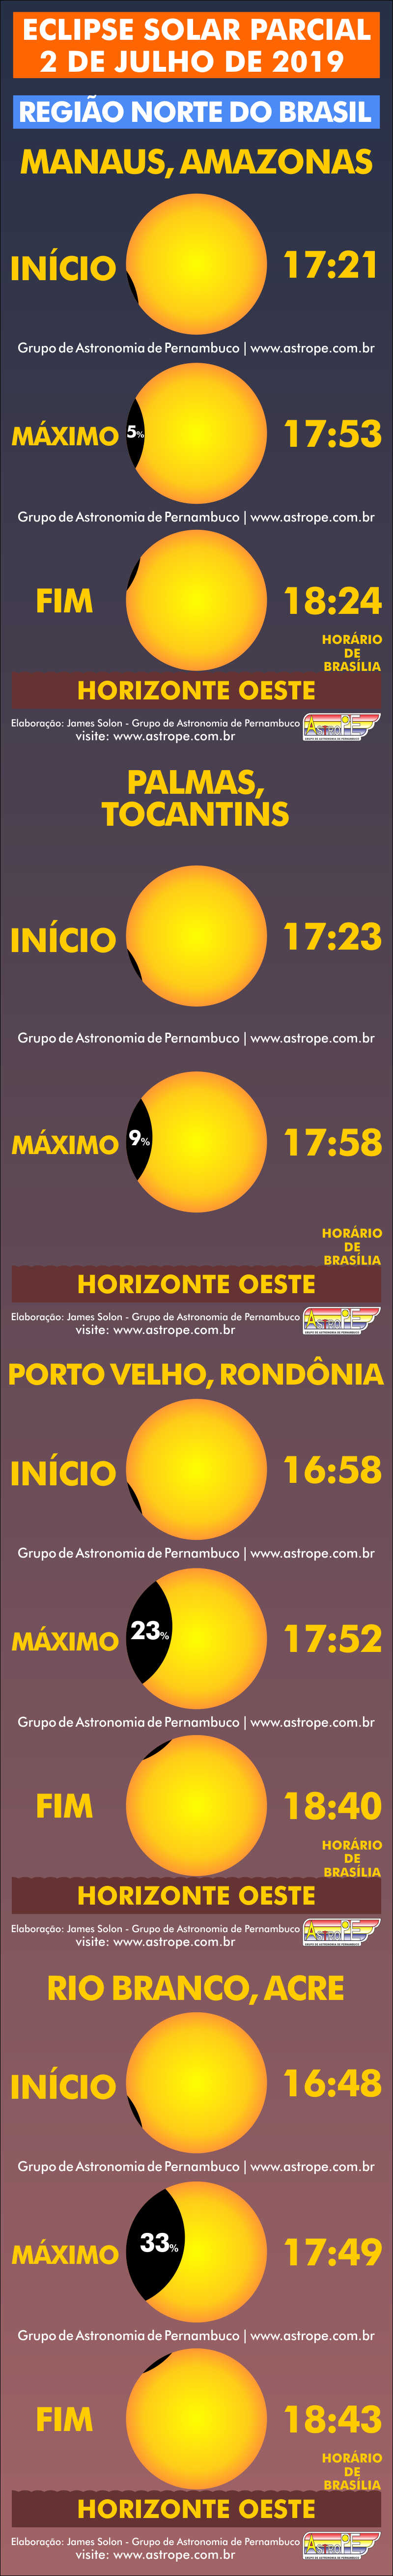 Horários do Eclipse Solar Parcial de 2 de julho de 2019 no Brasil na Região Norte. Crédito: AstroPE.